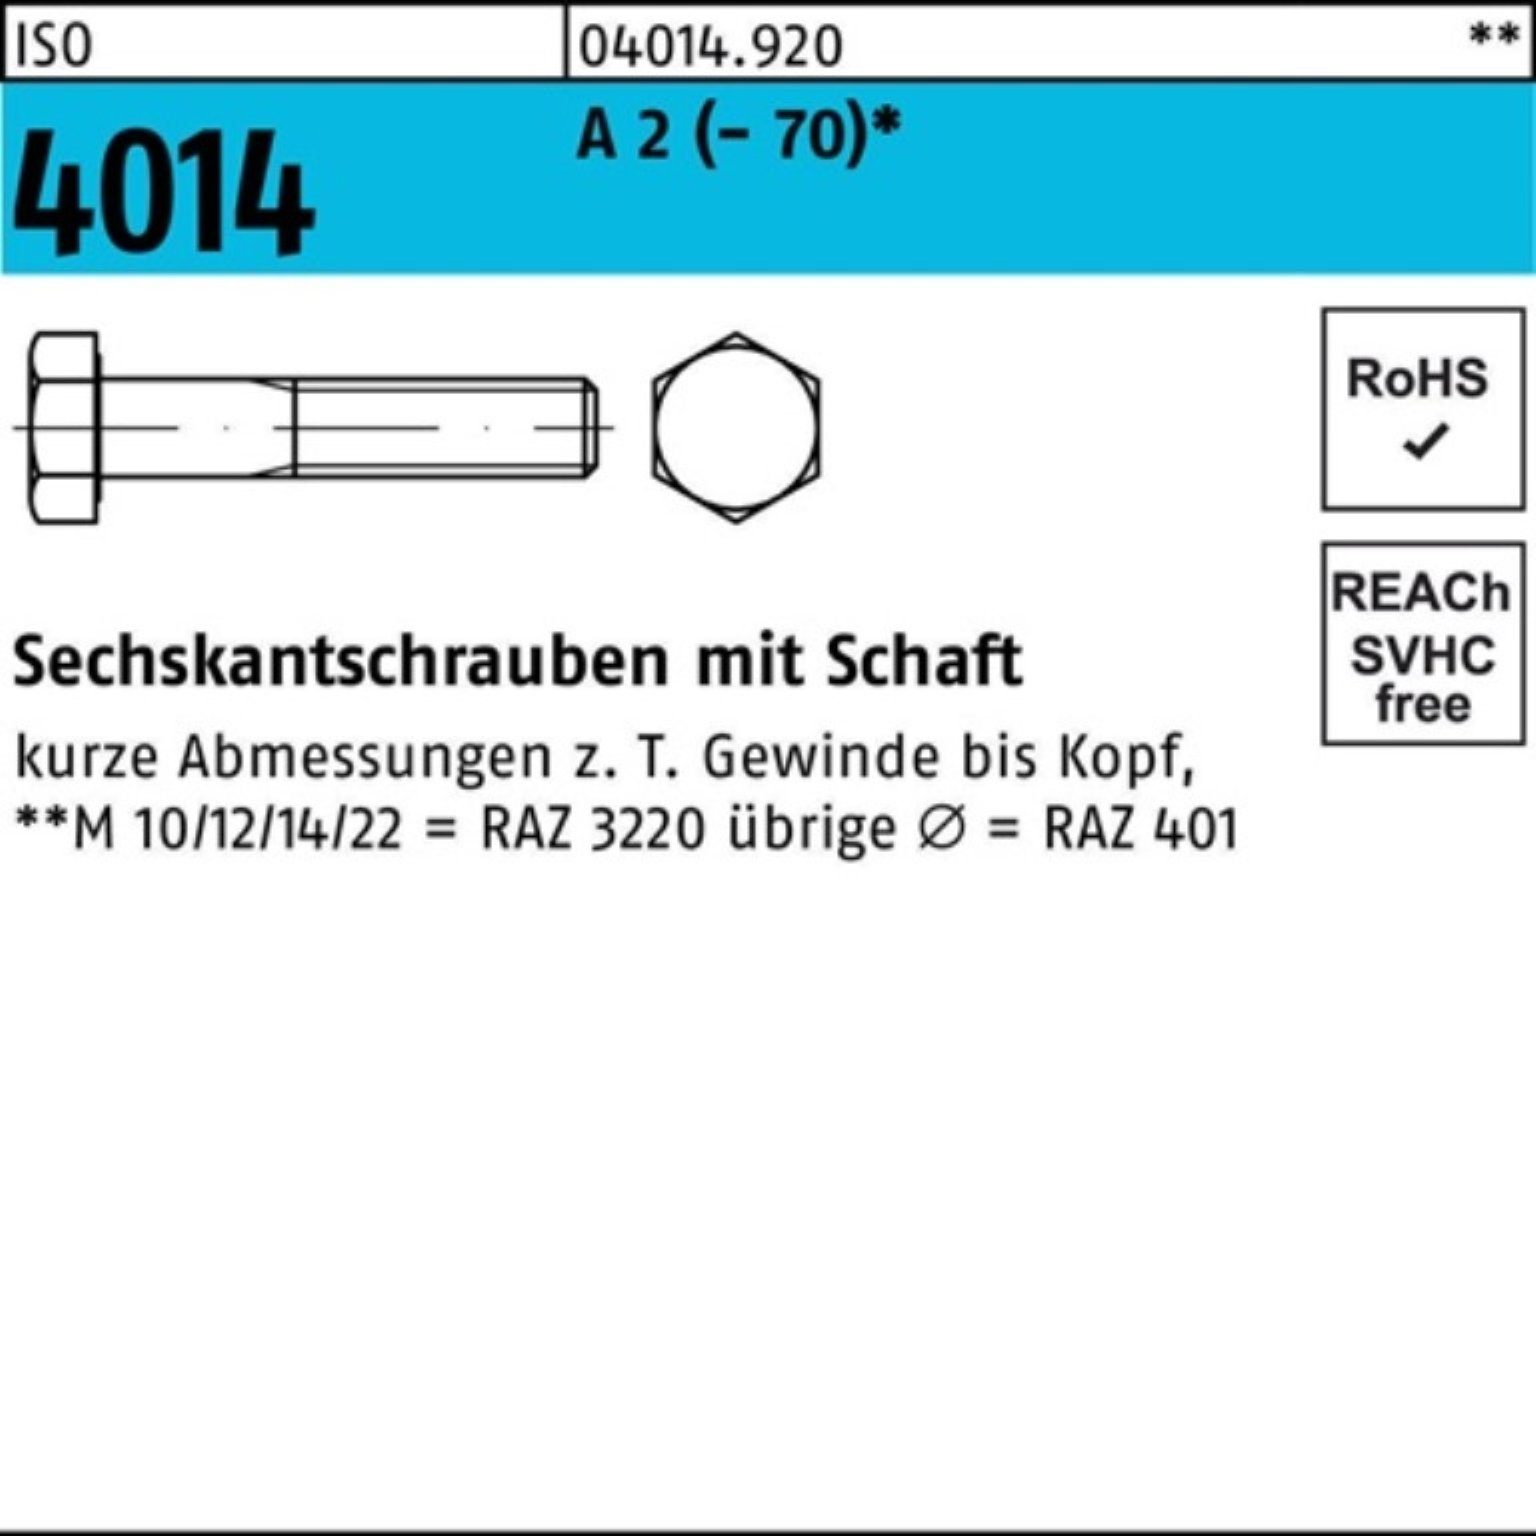 Bufab Sechskantschraube 100er Pack Sechskantschraube ISO 4014 Schaft M16x 100 A 2 (70) 25 St